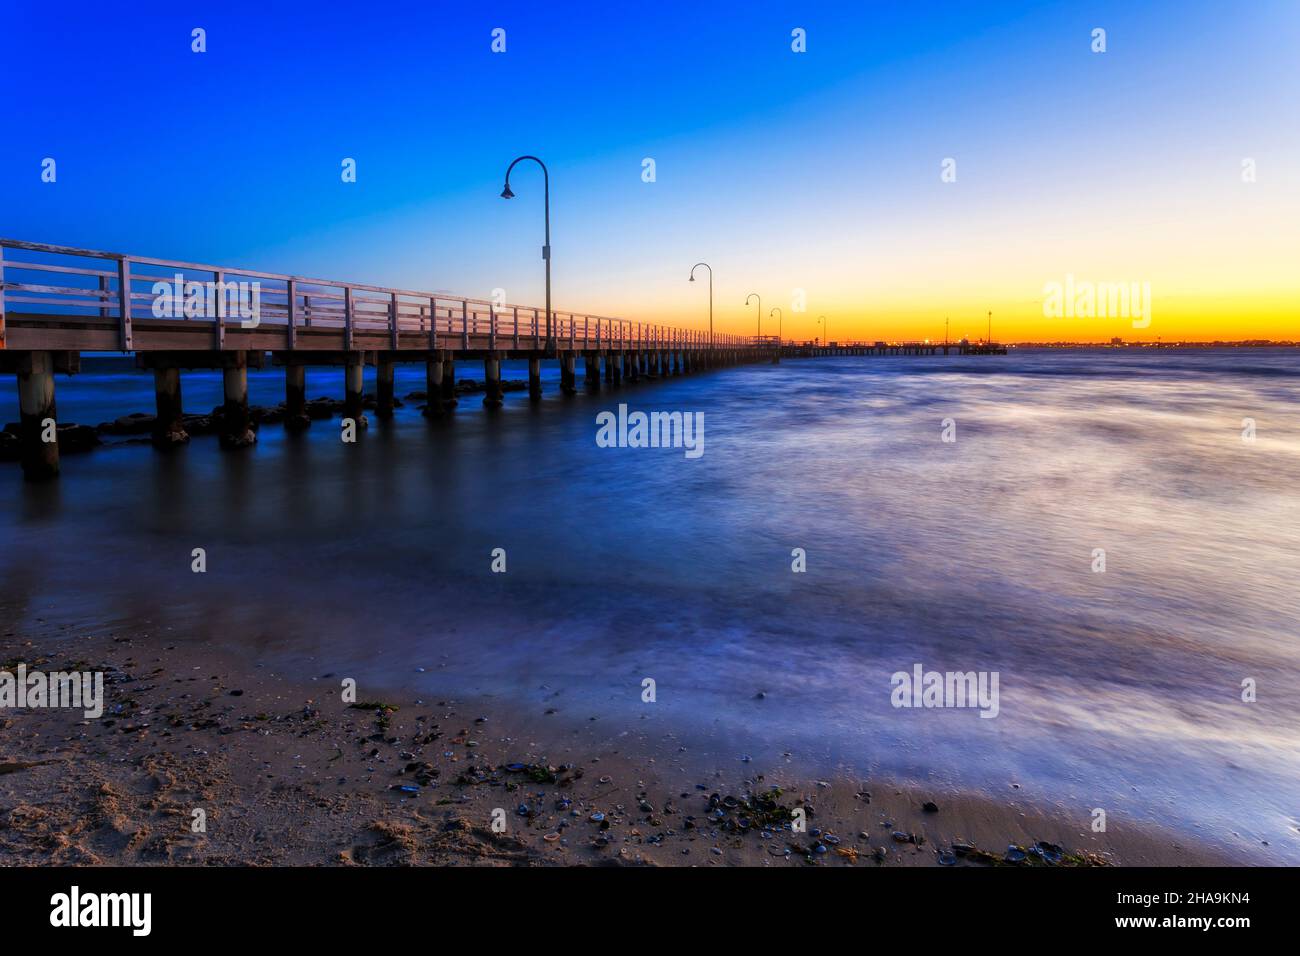 Alter Holzsteg am sandigen Strand von Port Phillip Bay in Melbourne, Australien, bei farbenfrohem Sonnenuntergang. Stockfoto